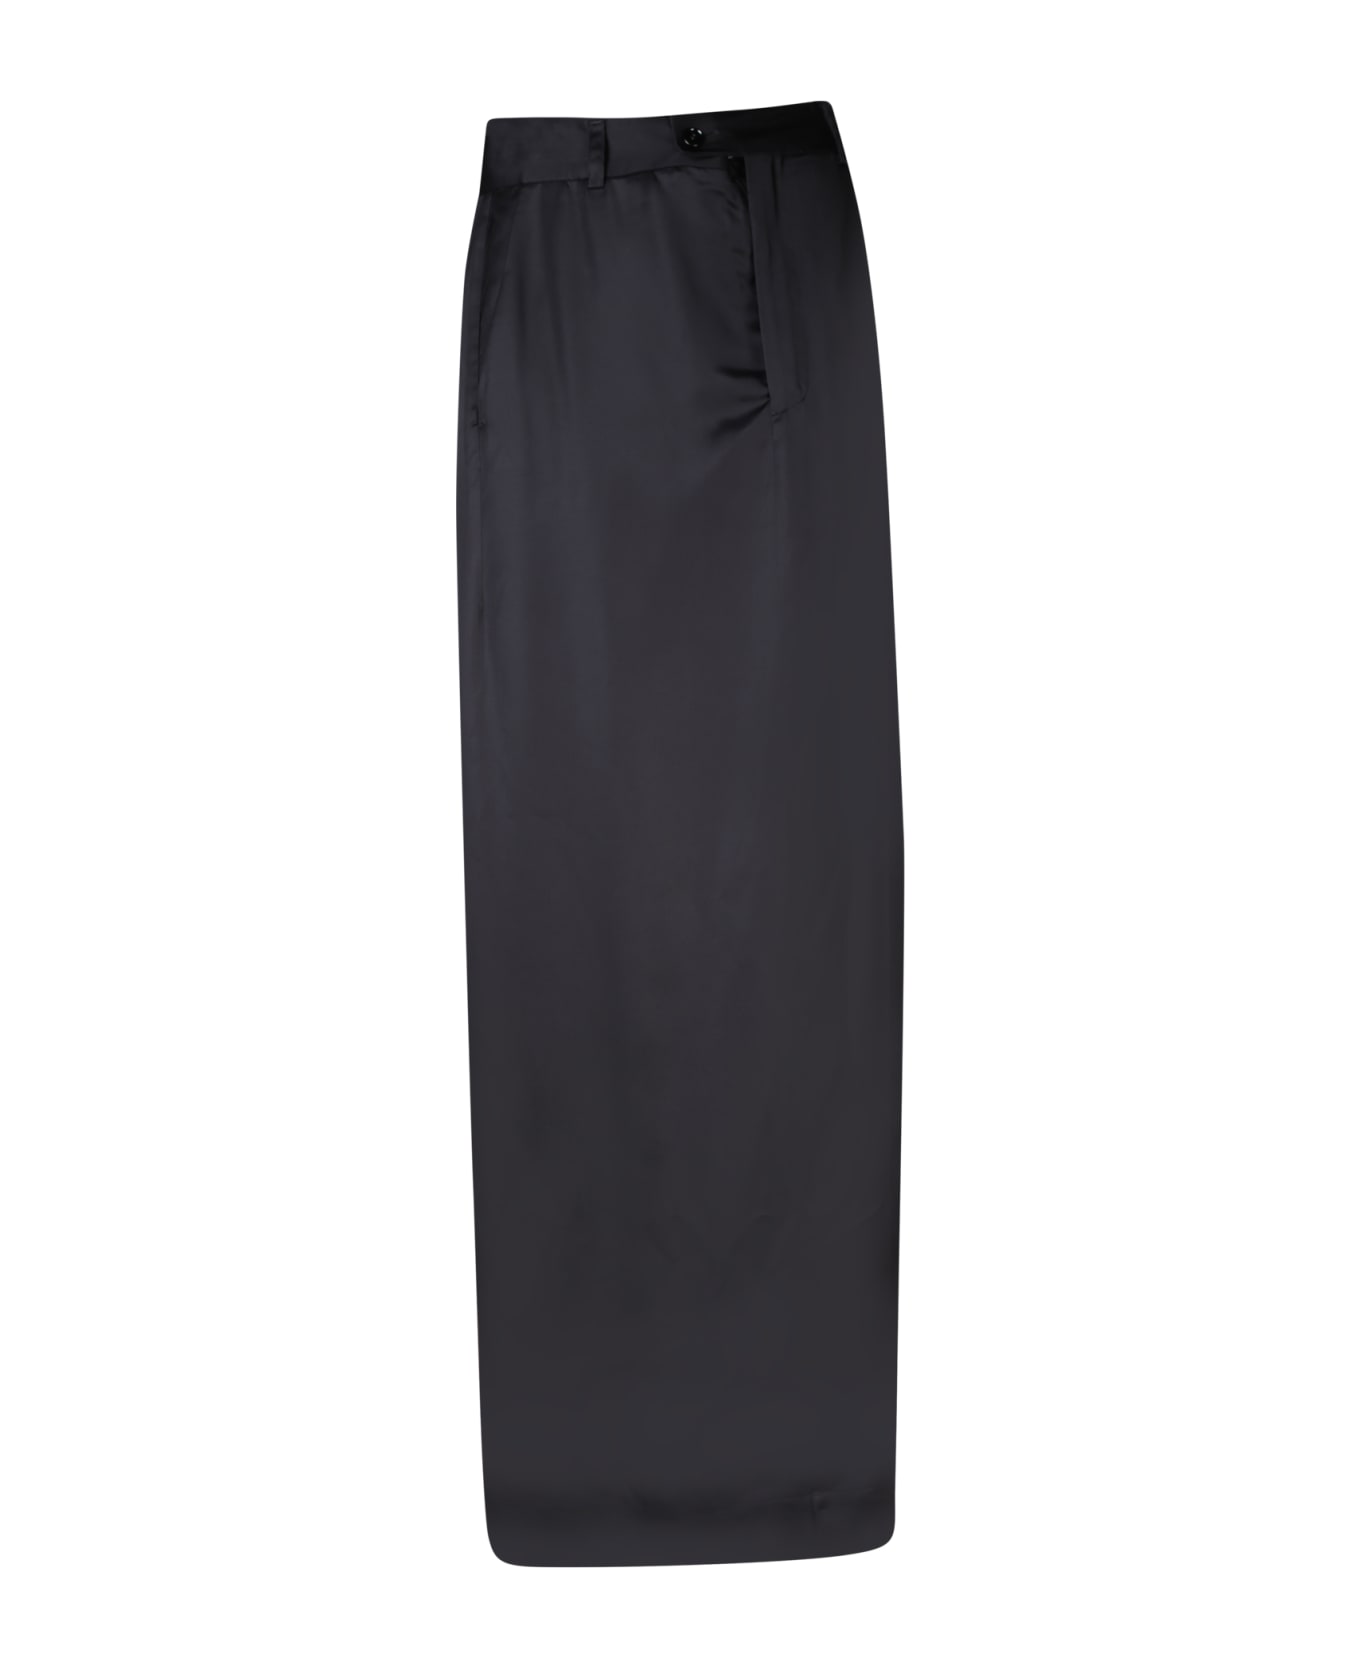 MM6 Maison Margiela Long Black Skirt - Black